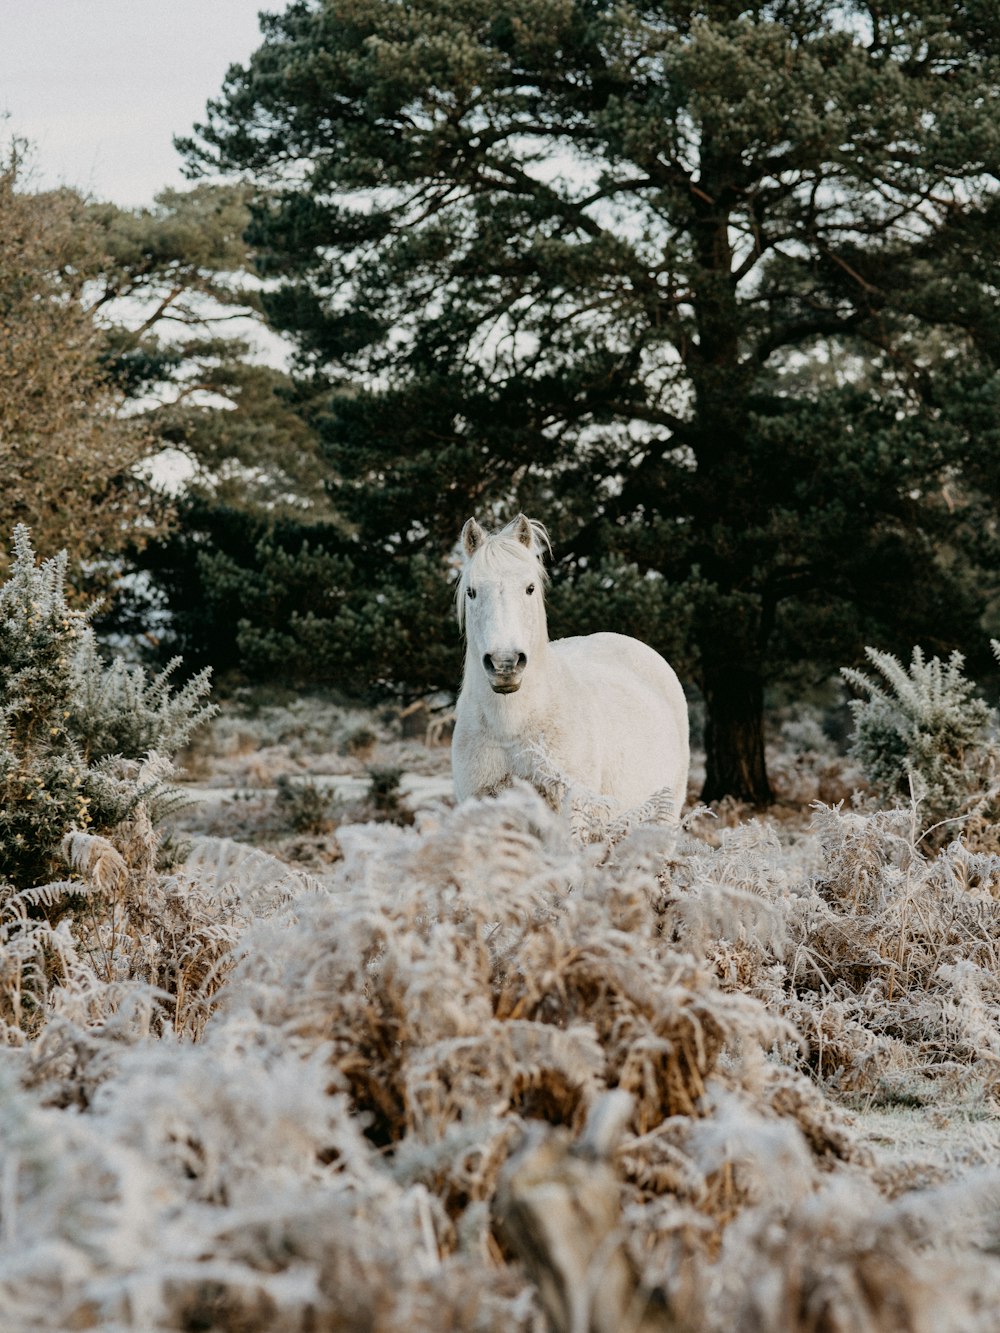 昼間の茶色の芝生の上の白い馬